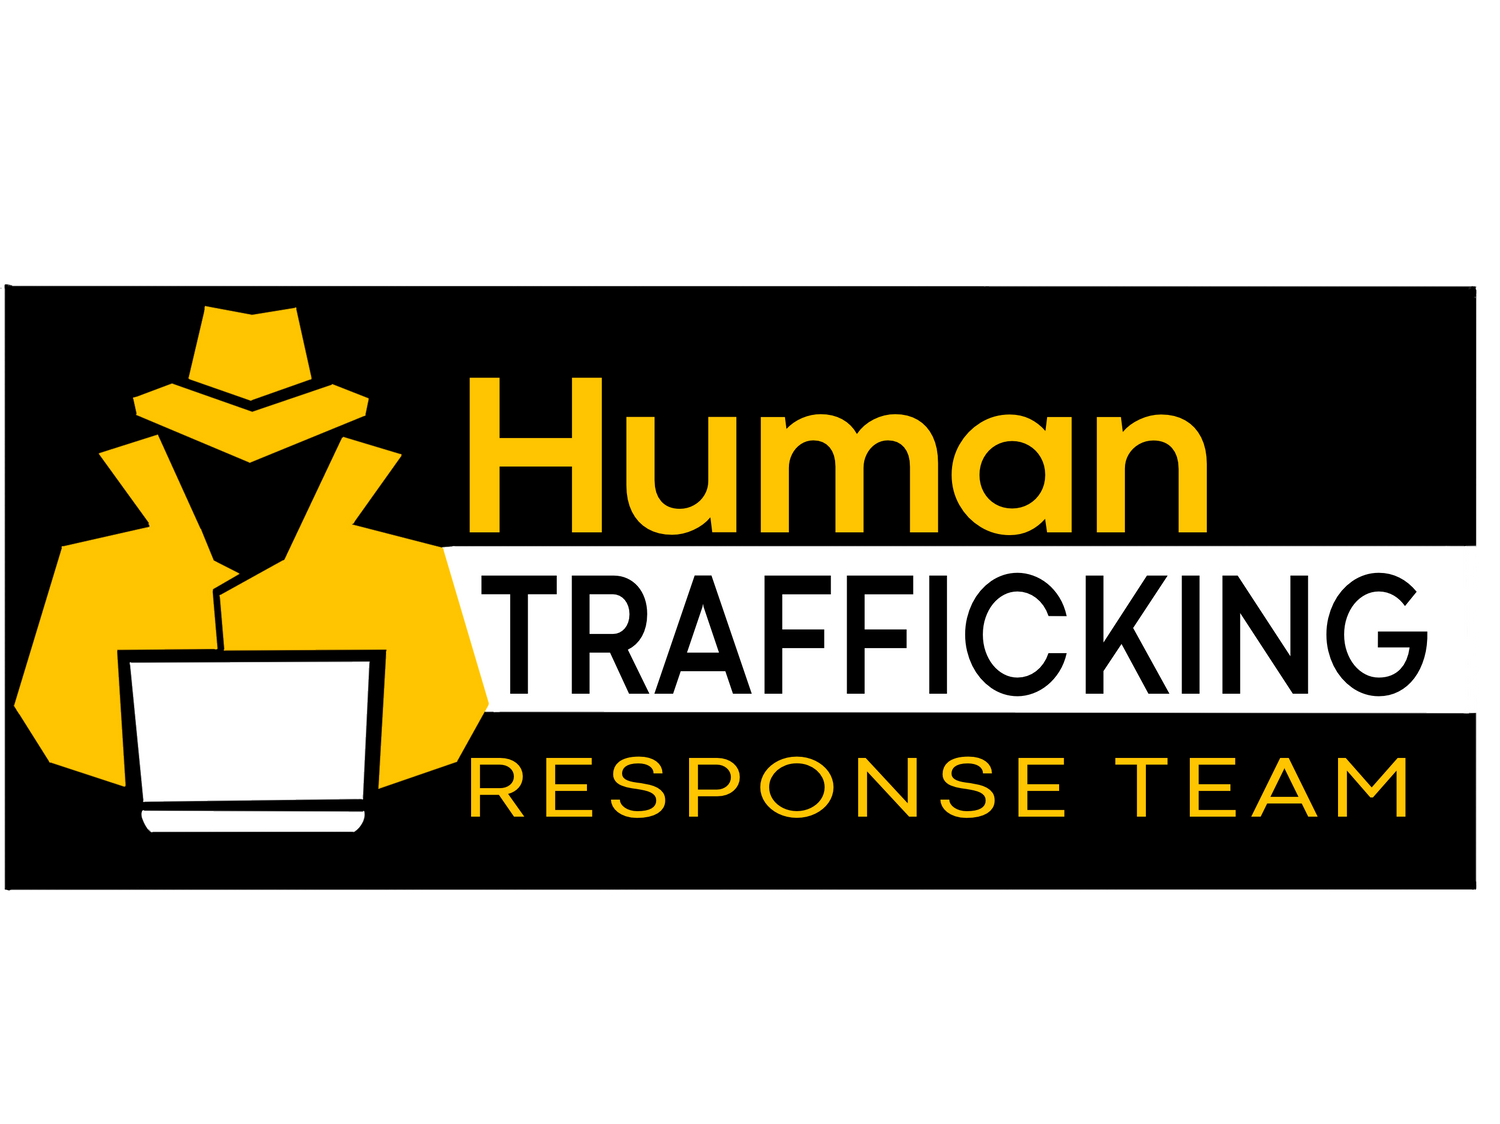 Human Trafficking Response Team